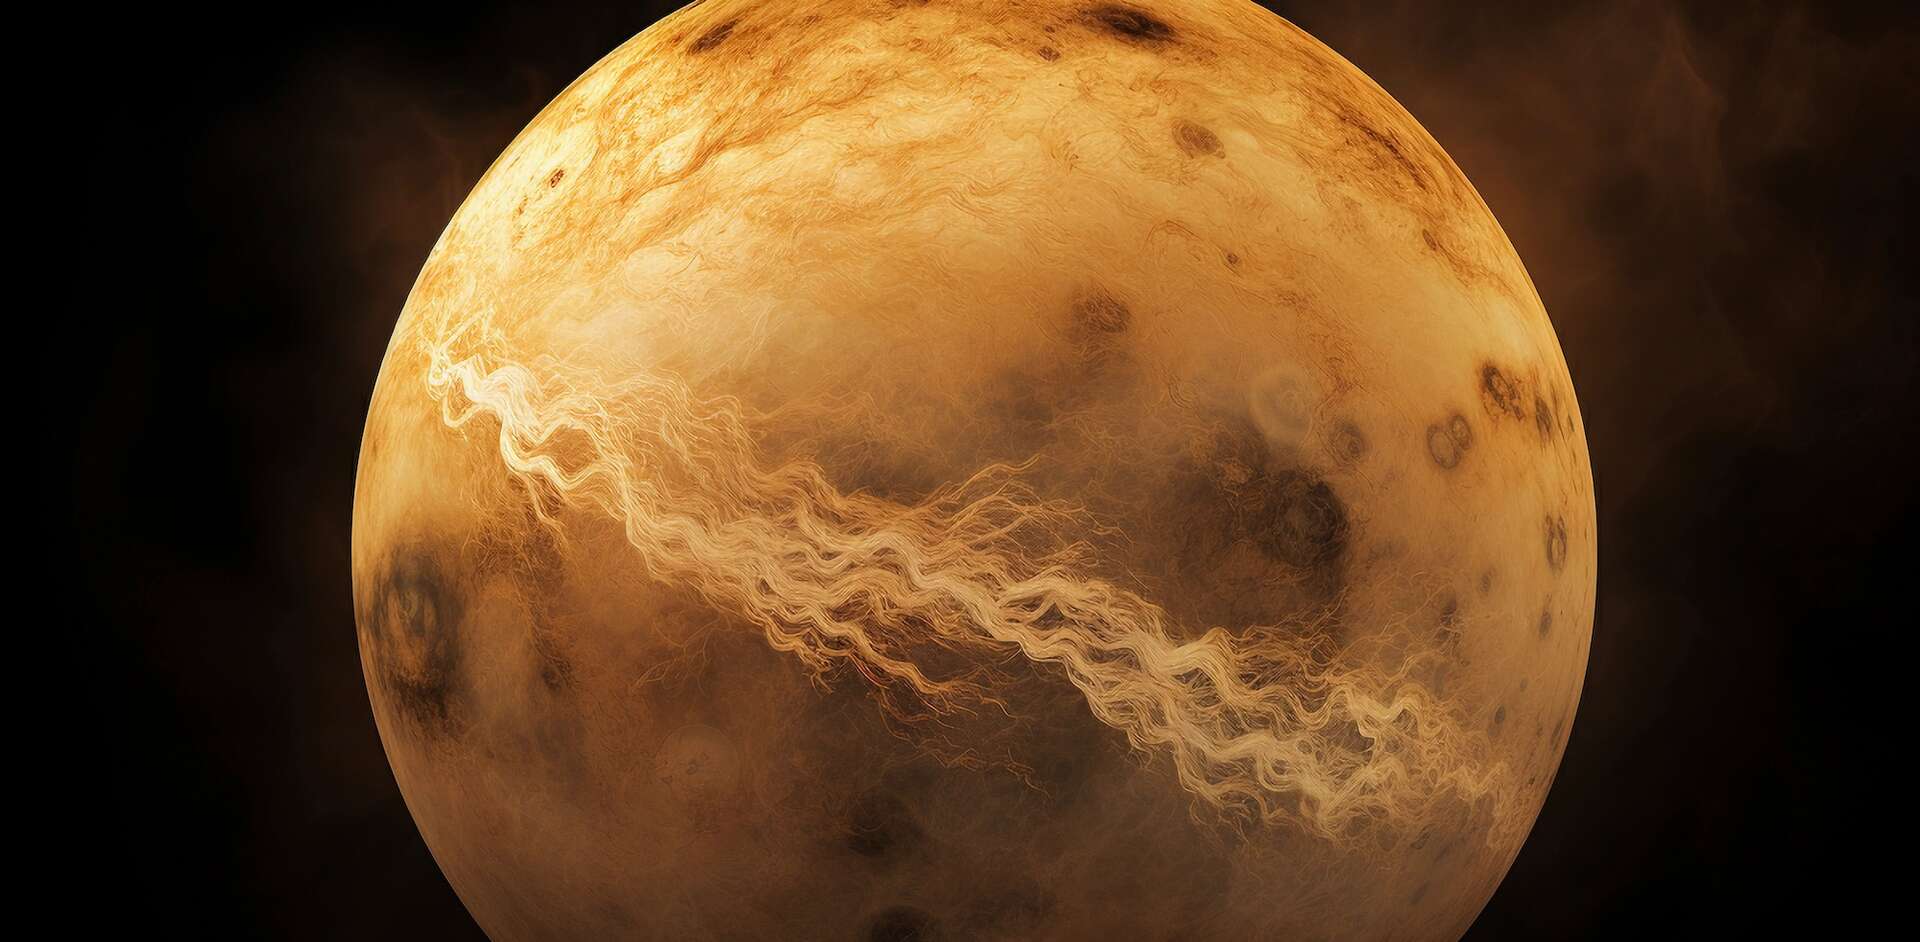 Will Venus experience plate tectonics like on Earth?